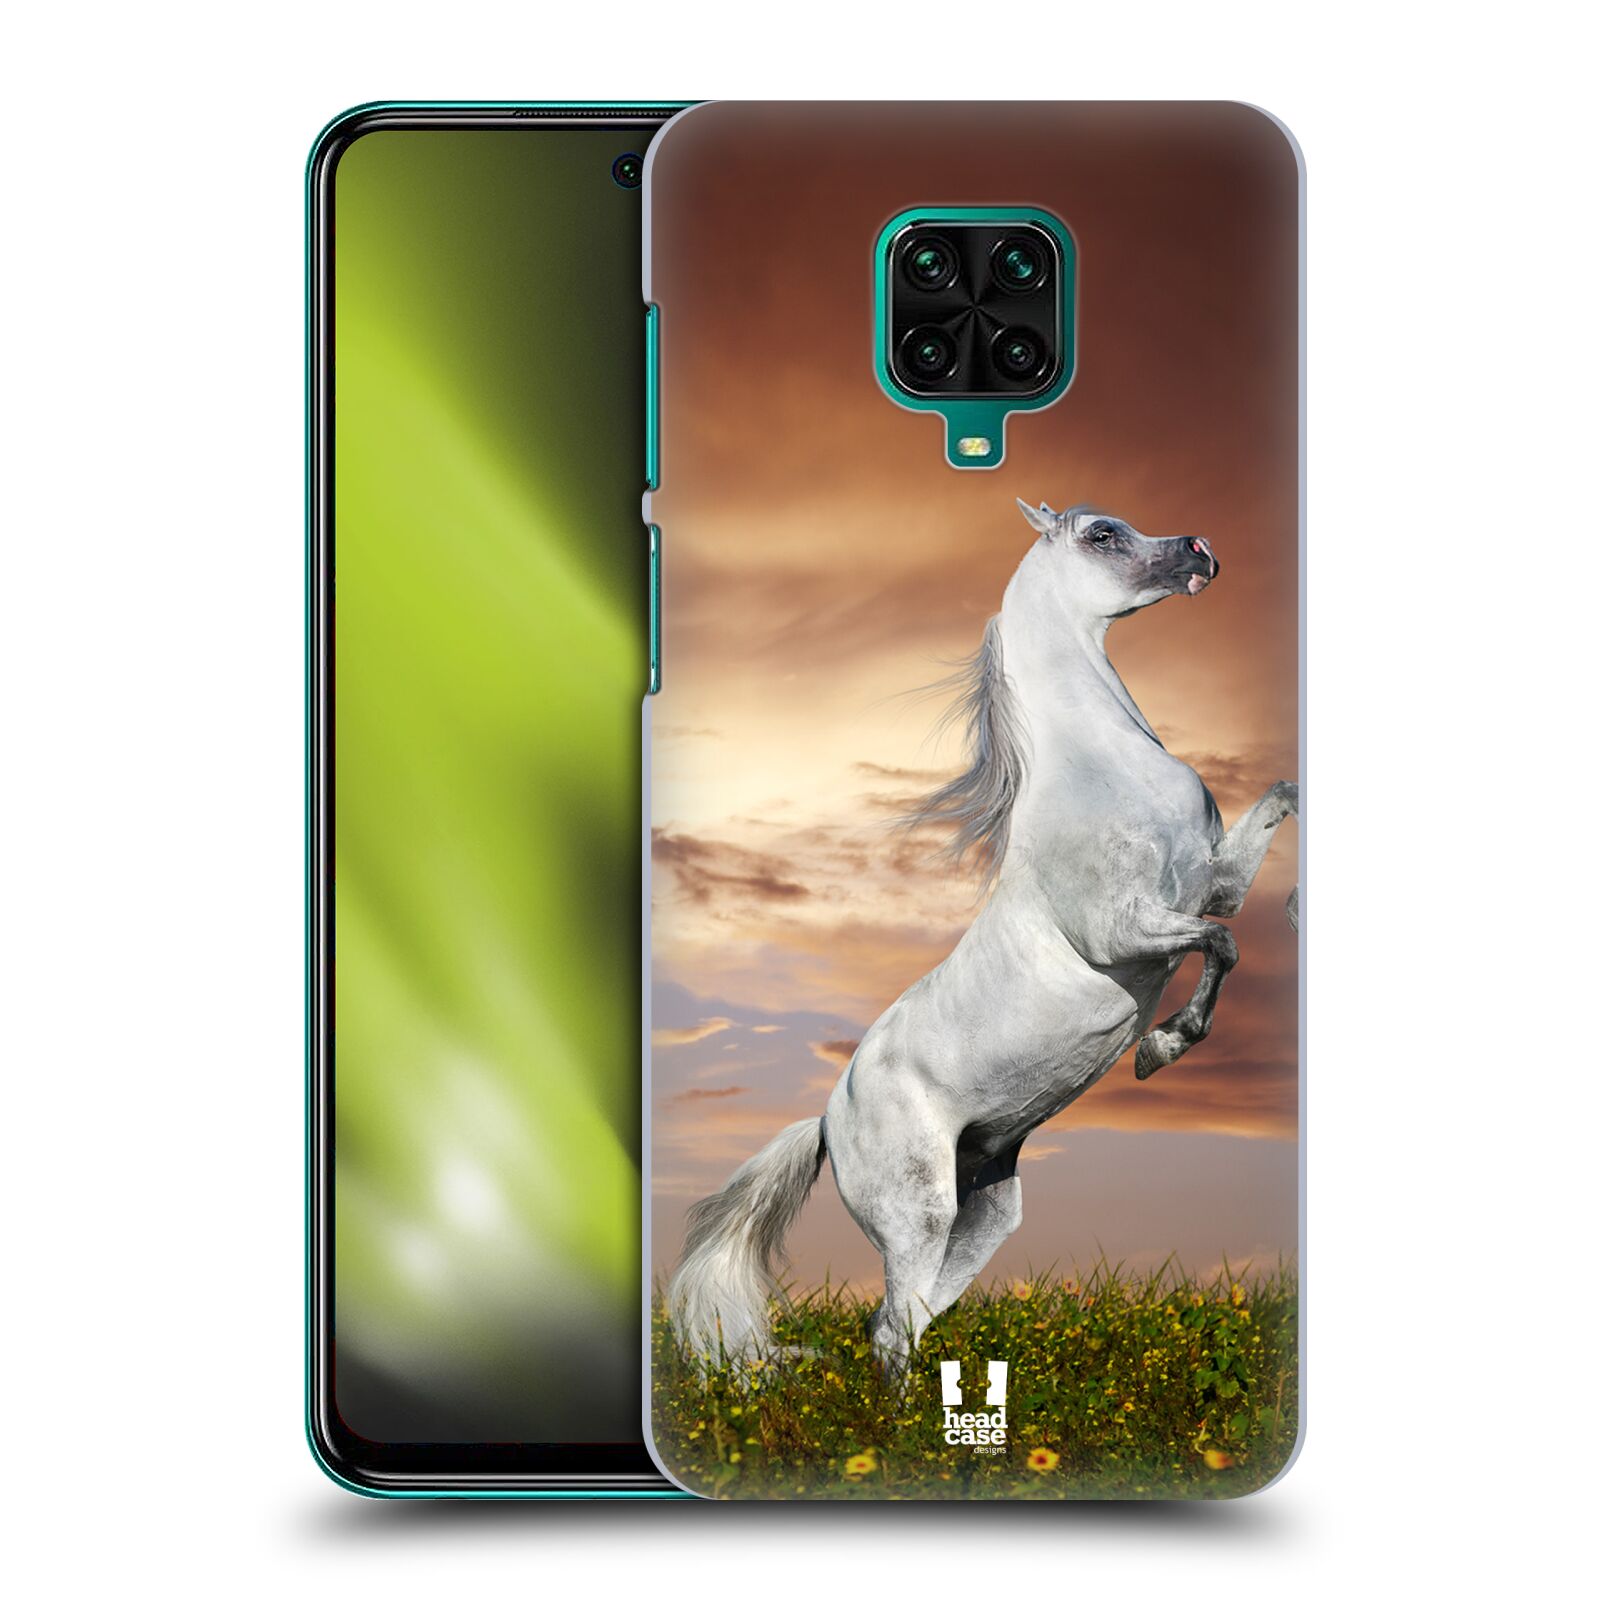 Zadní obal pro mobil Xiaomi Redmi Note 9 Pro - HEAD CASE - Svět zvířat divoký kůň